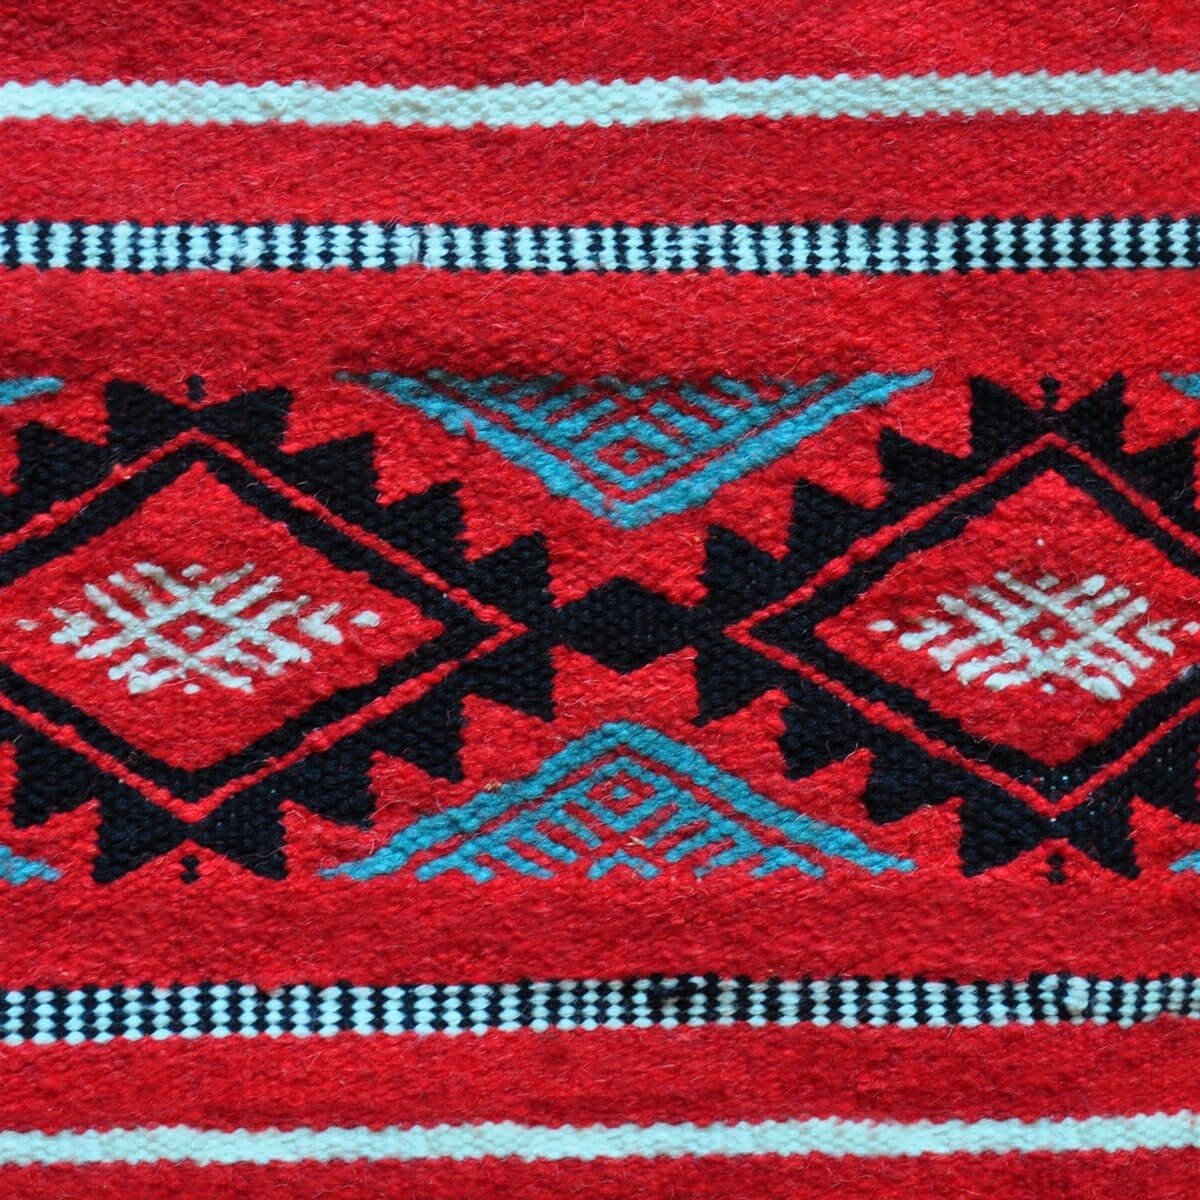 Berber Teppich Teppich Kelim Soumoud 137x240 Rot/Gelb/Blau (Handgewebt, Wolle) Tunesischer Kelim-Teppich im marokkanischen Stil.